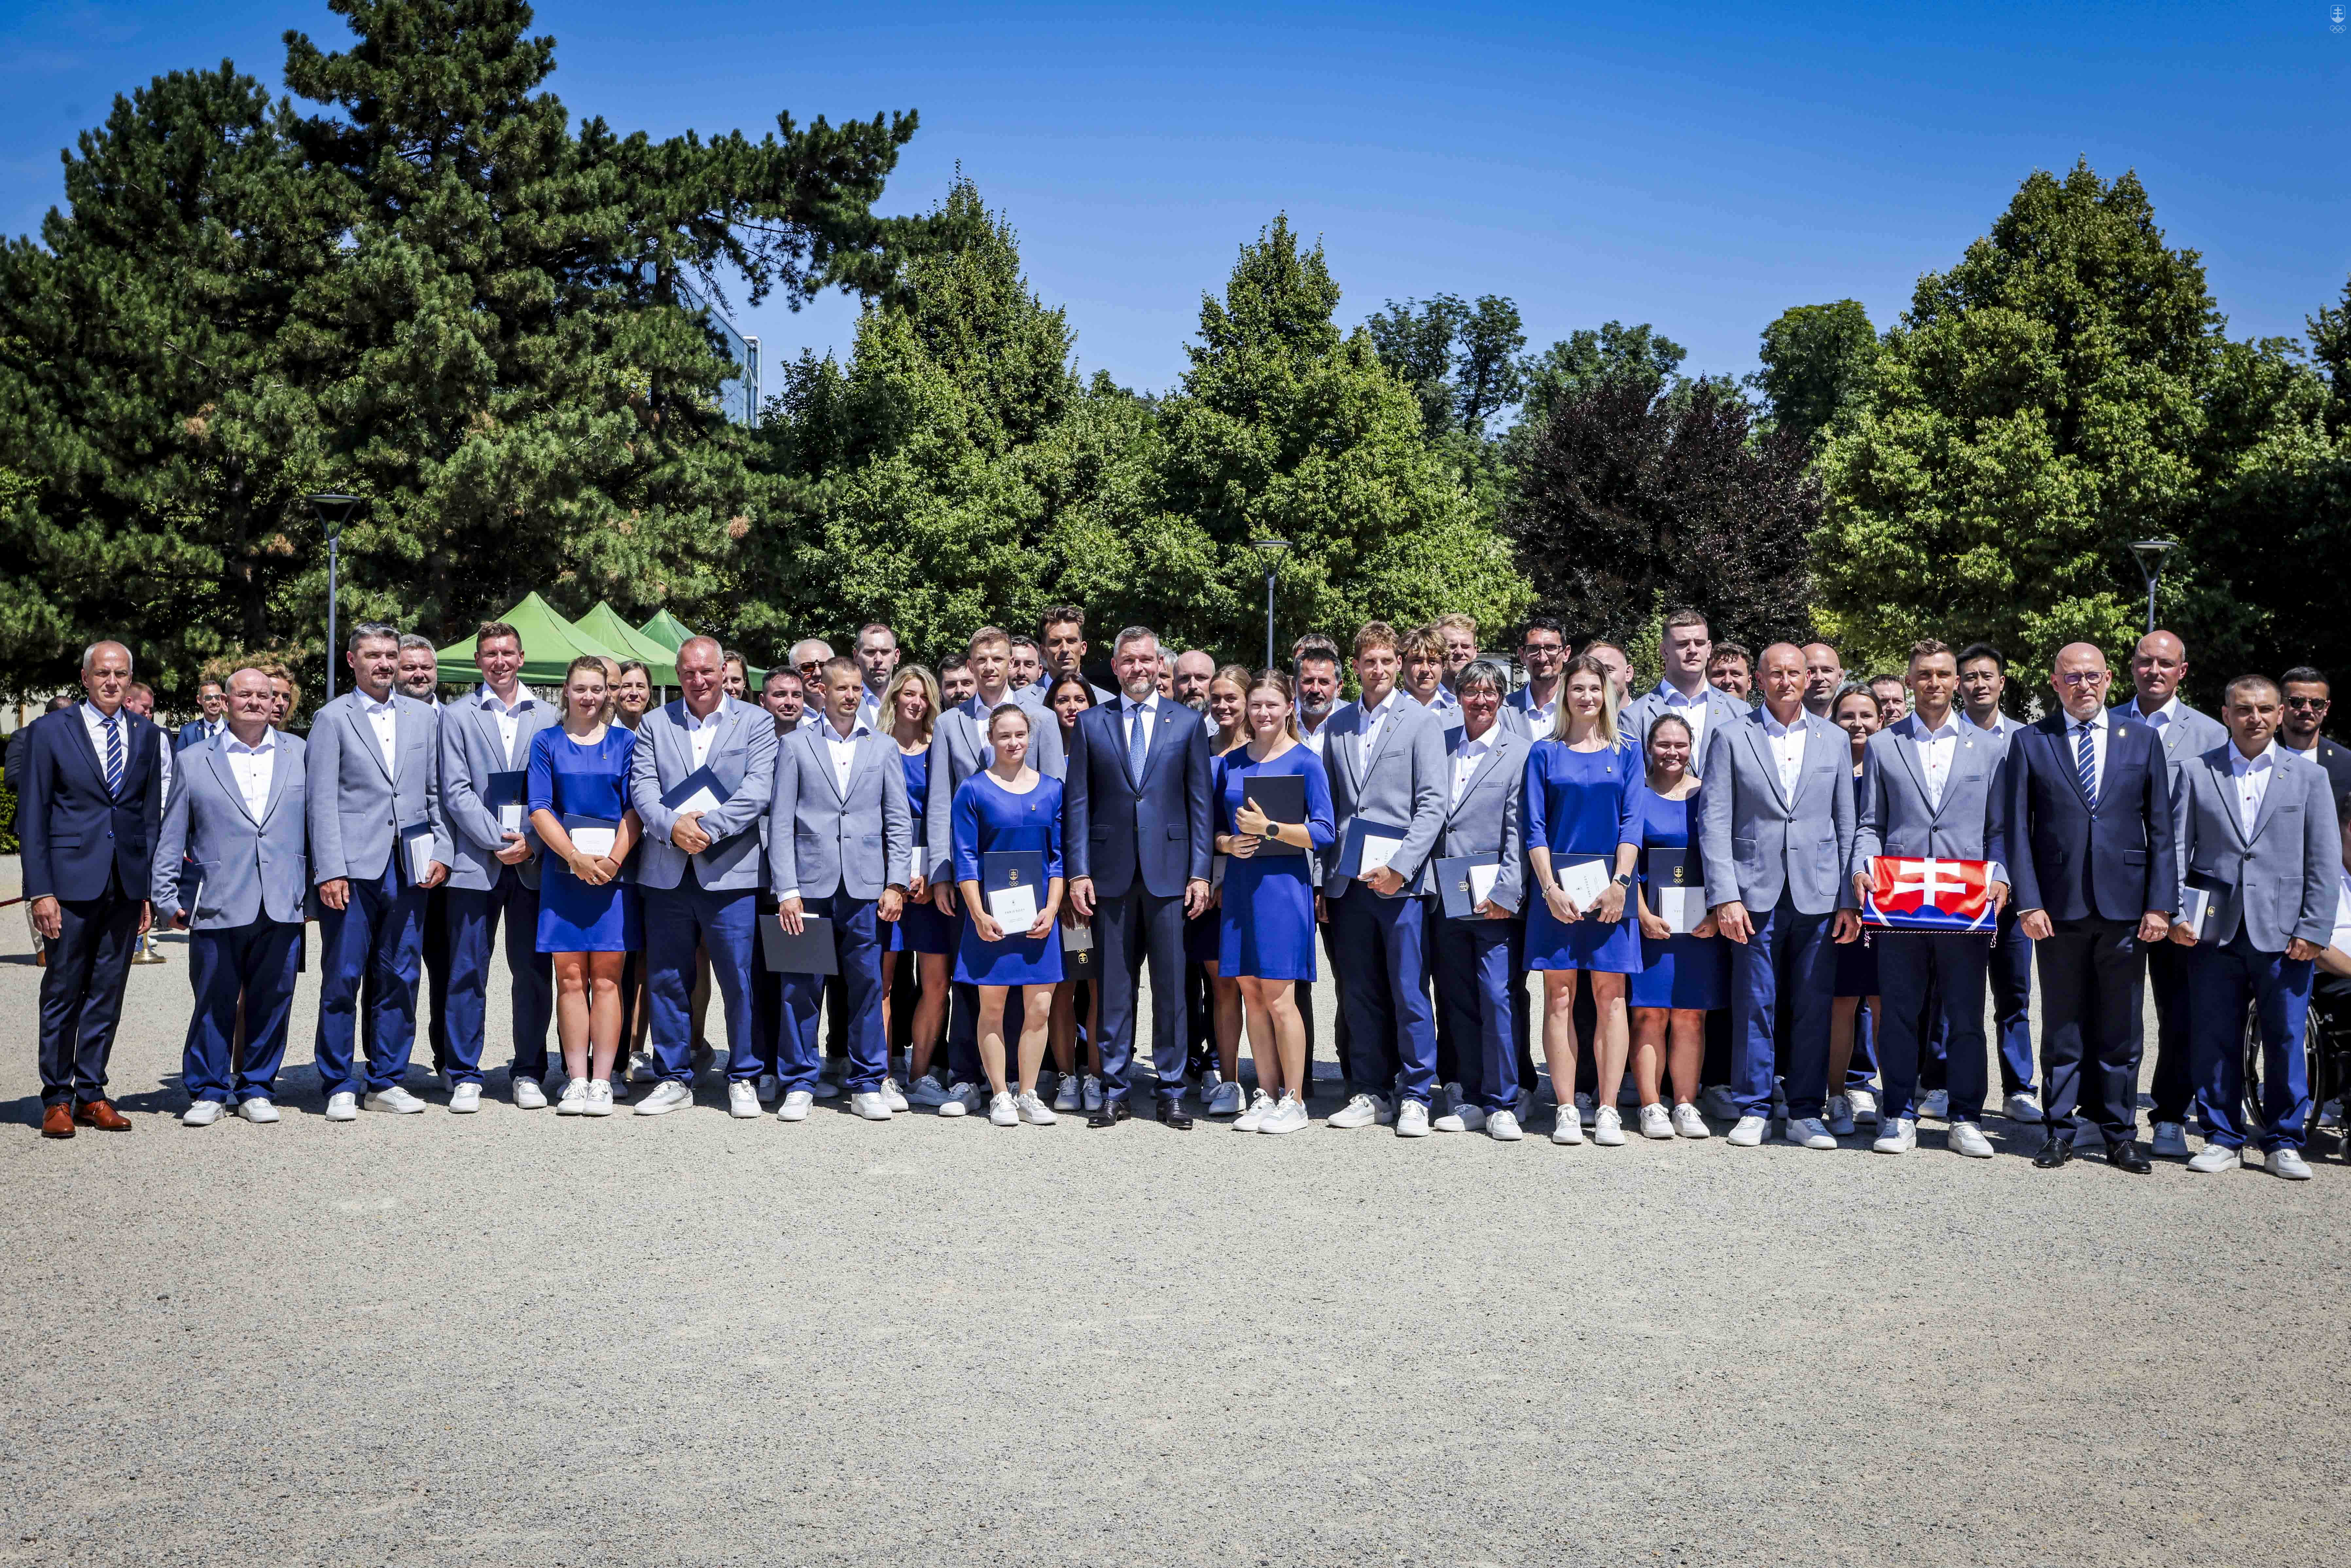 Členovia olympijskej výpravy SR s prezidentom SR Petrom Pellegrinim počas slávnostného sľubu pred odchodom do Paríža.